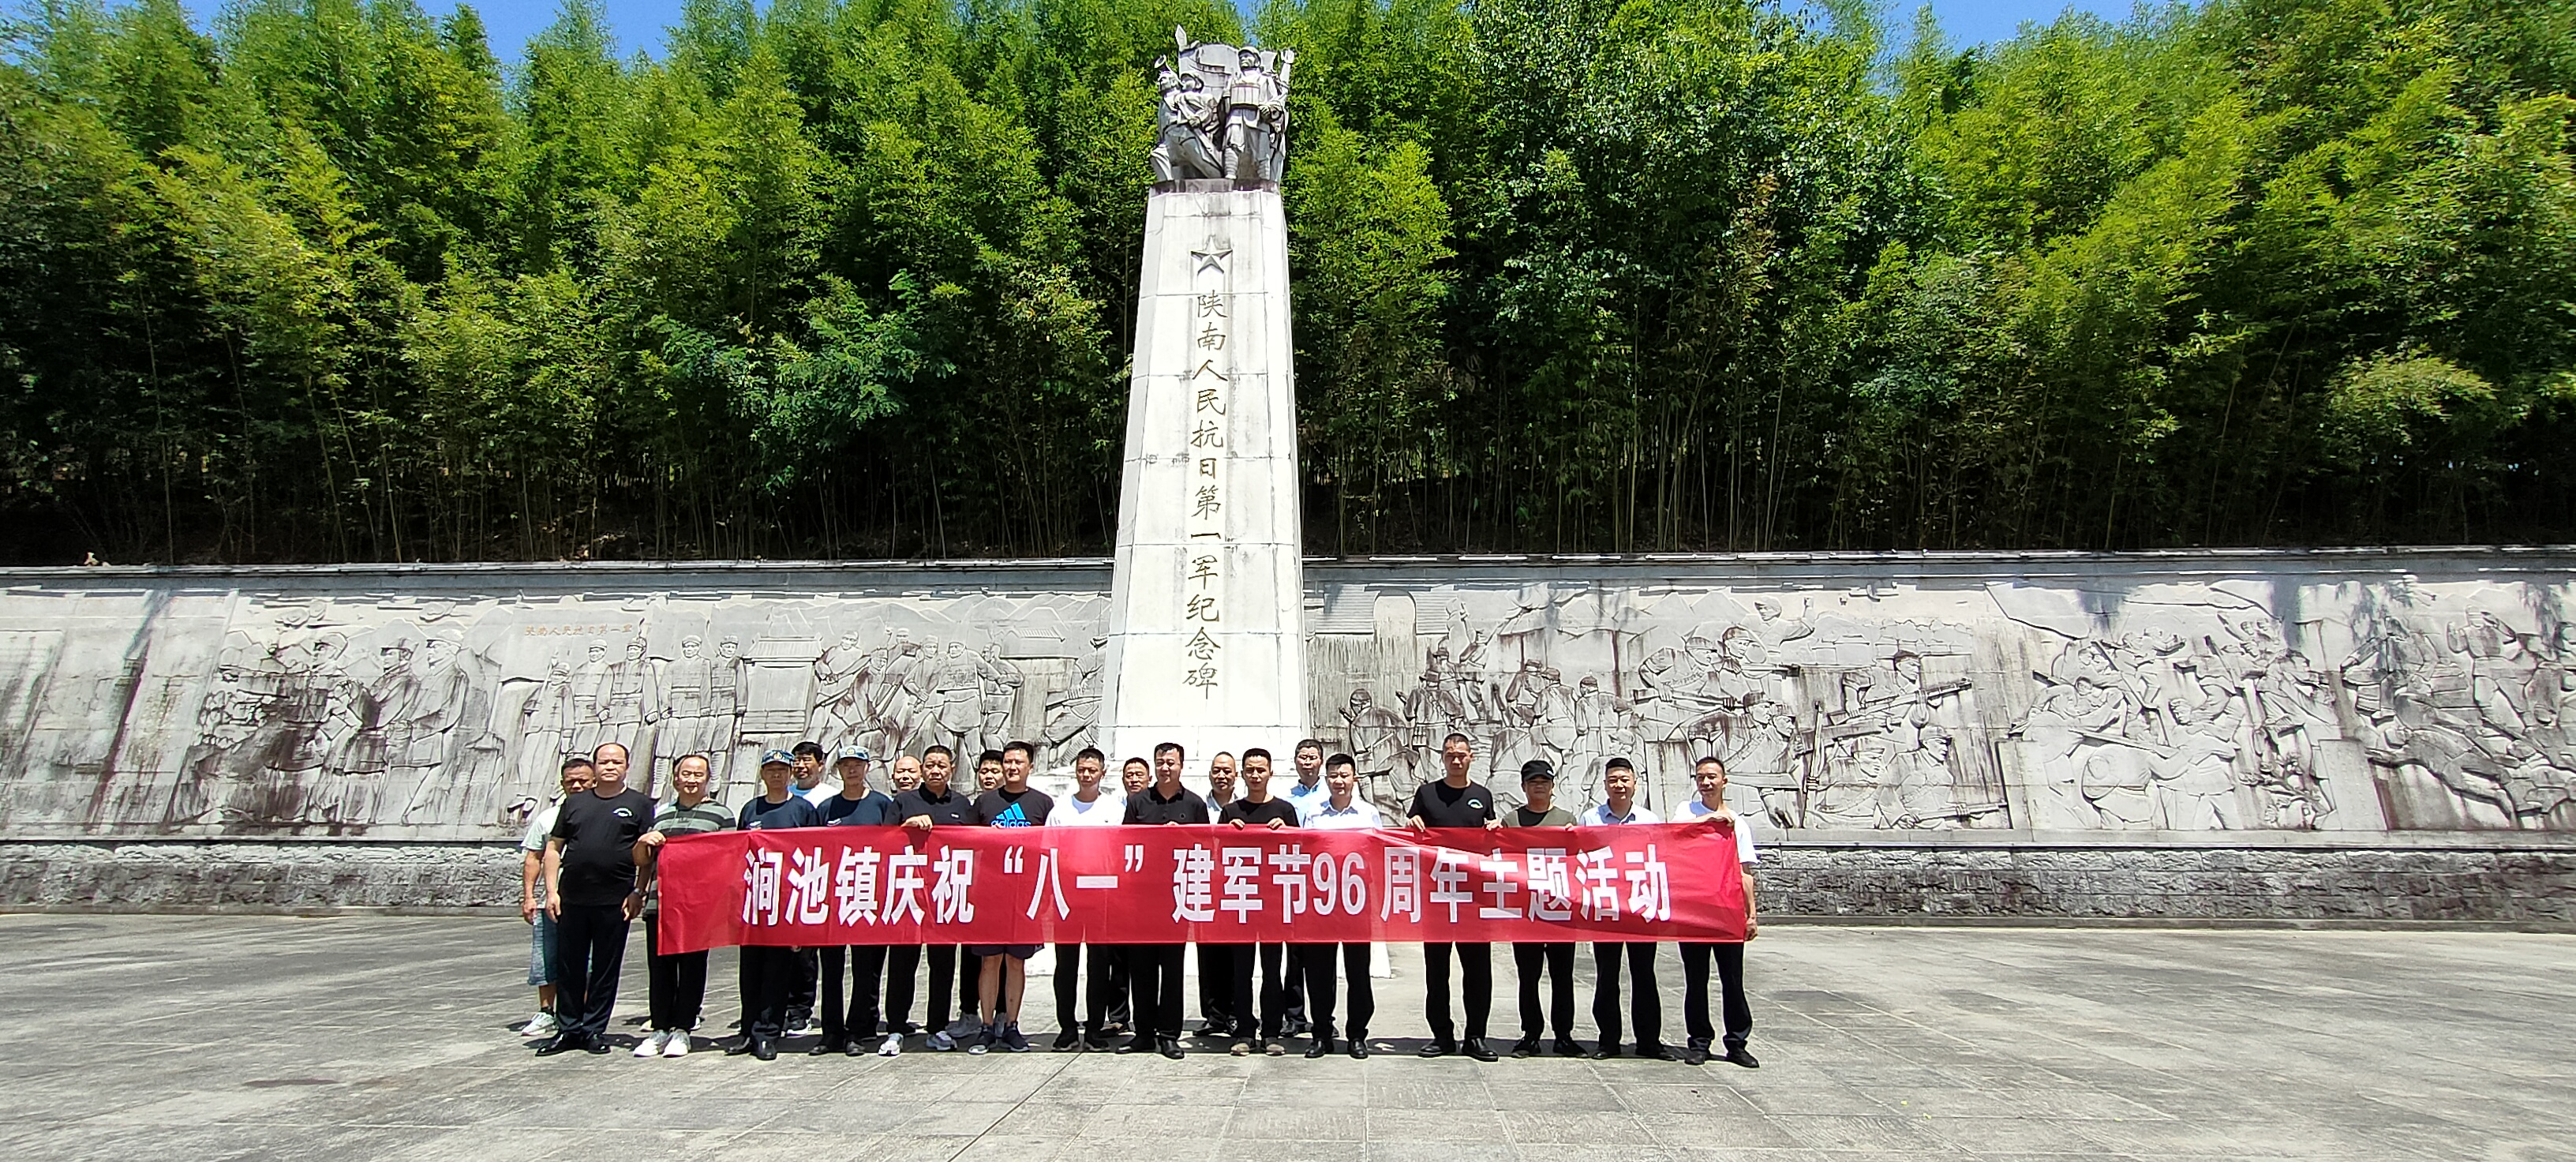 涧池镇组织召开庆祝中国人民解放军建军96周年活动